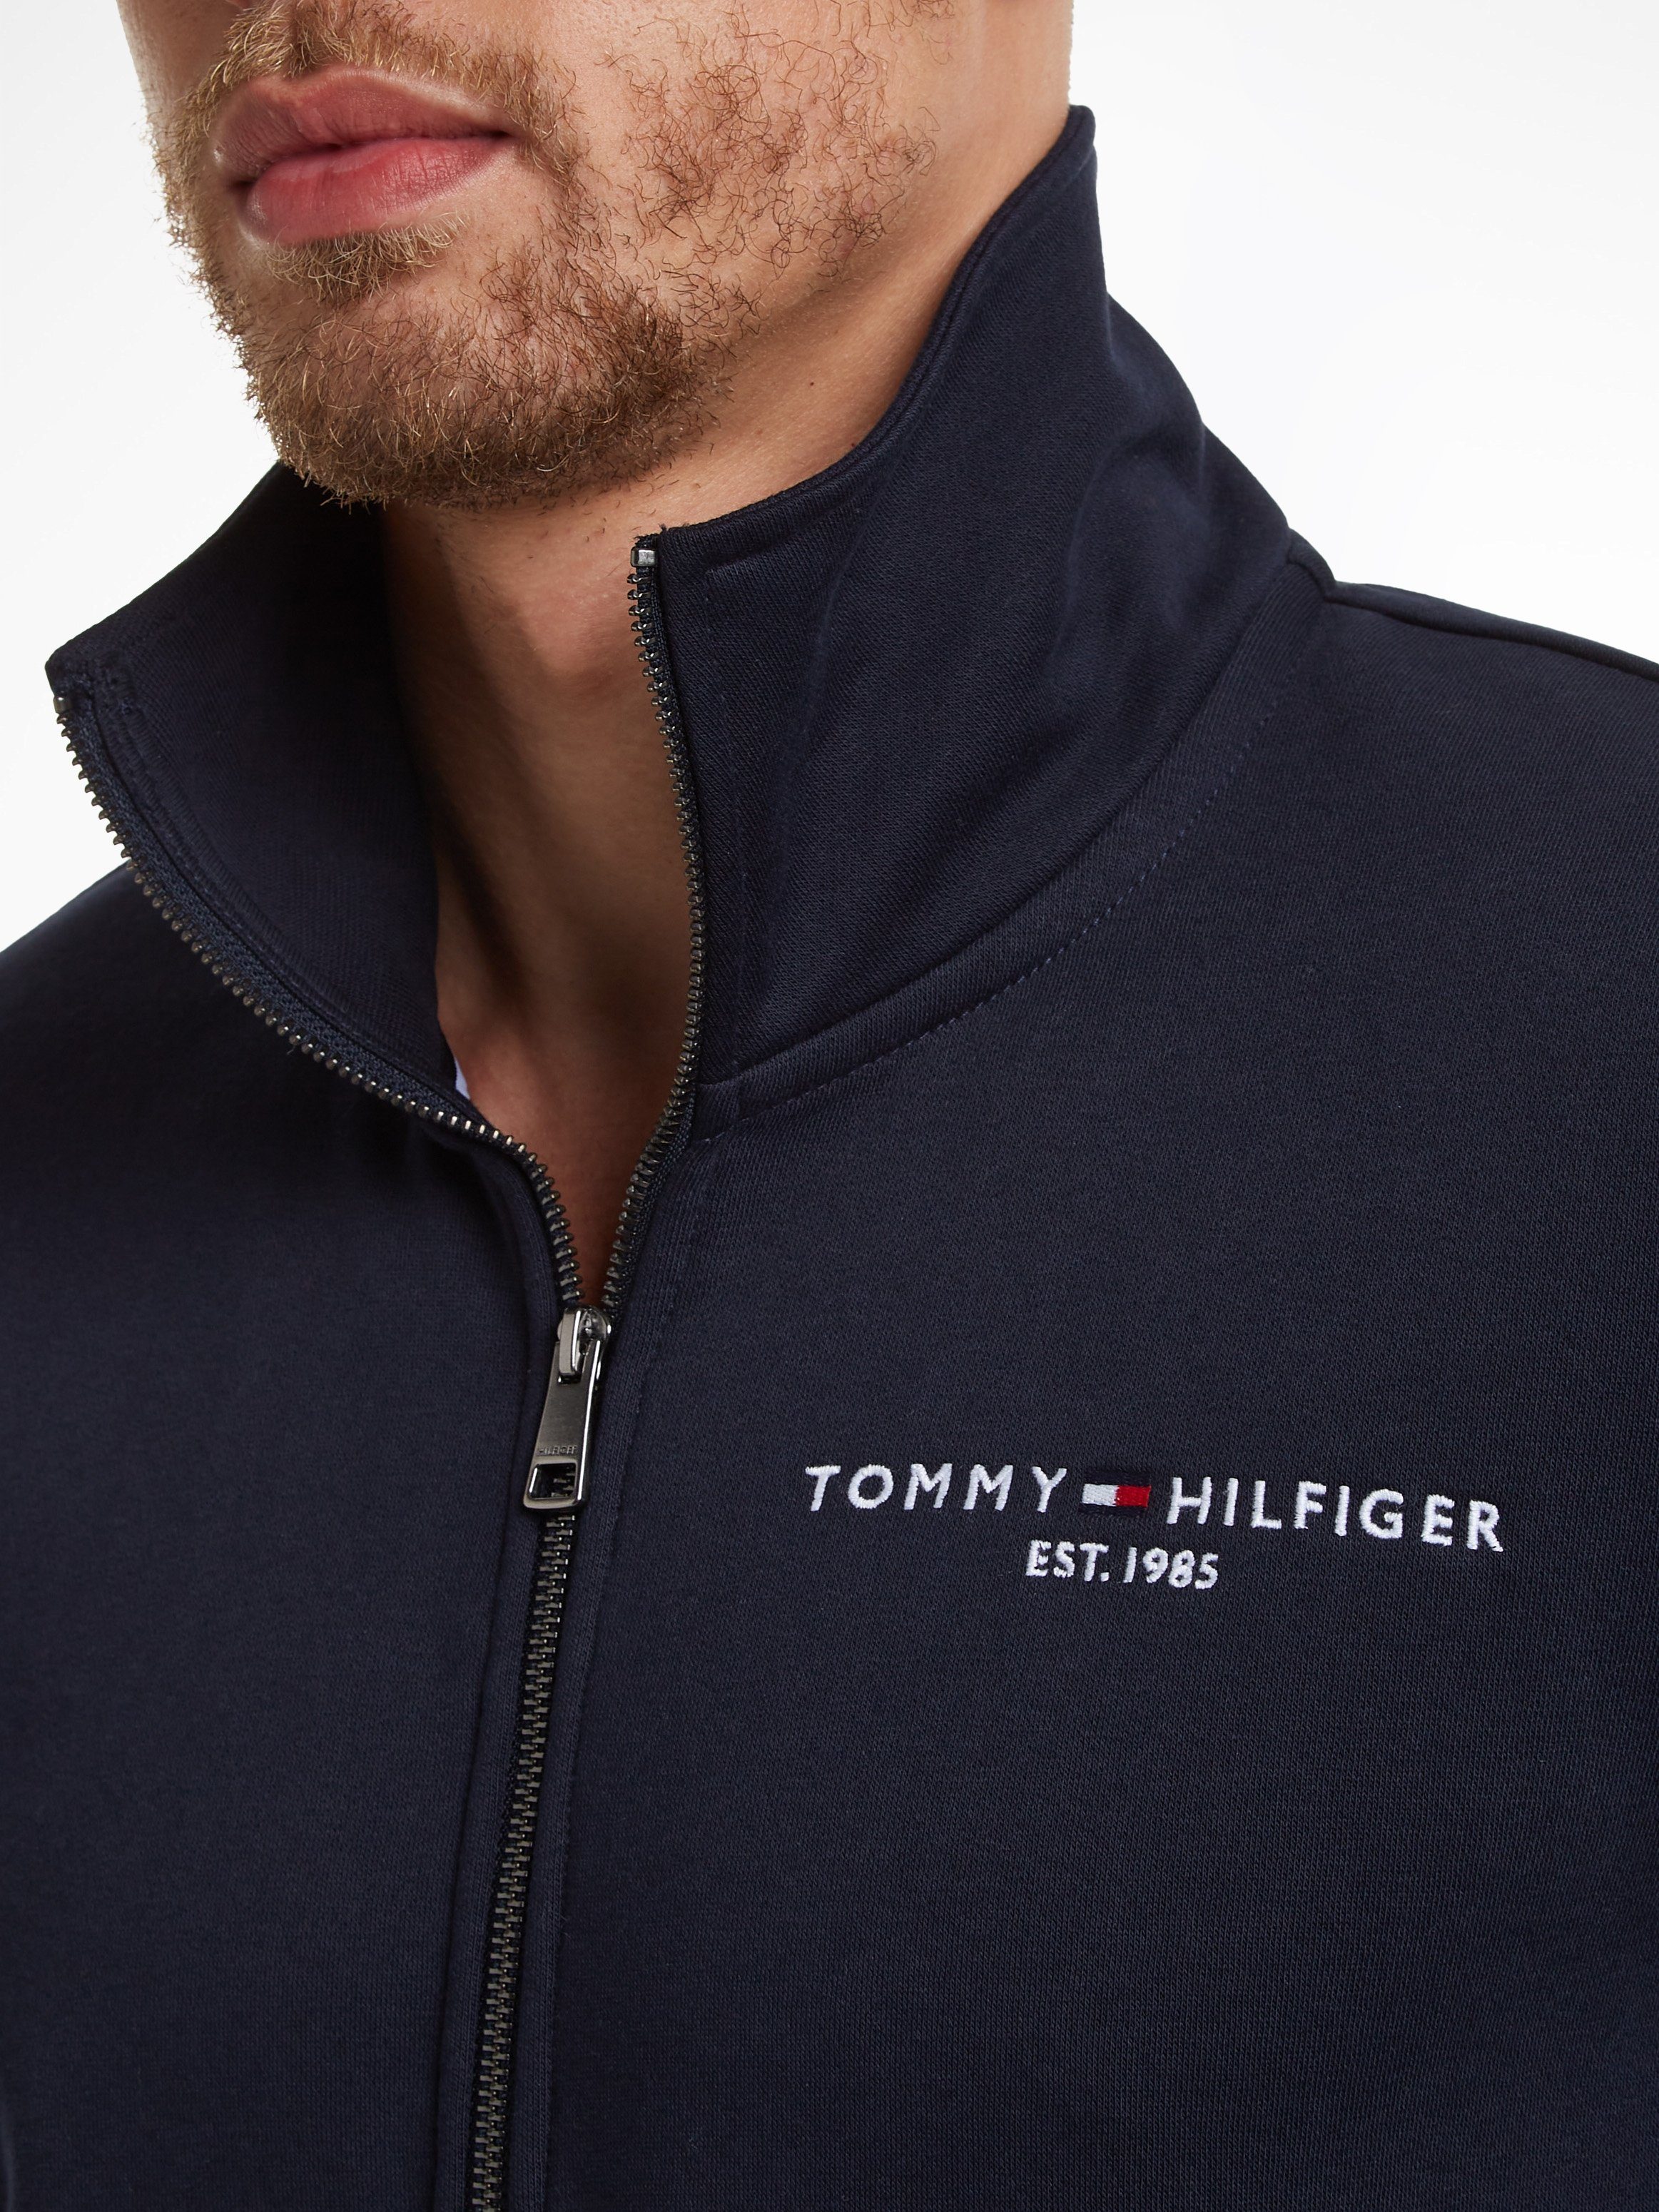 Tommy Hilfiger Sweater Reißverschluss geteilter und TOMMY ZIP LOGO mit blau COLLAR THRU STAND Kängurutasche